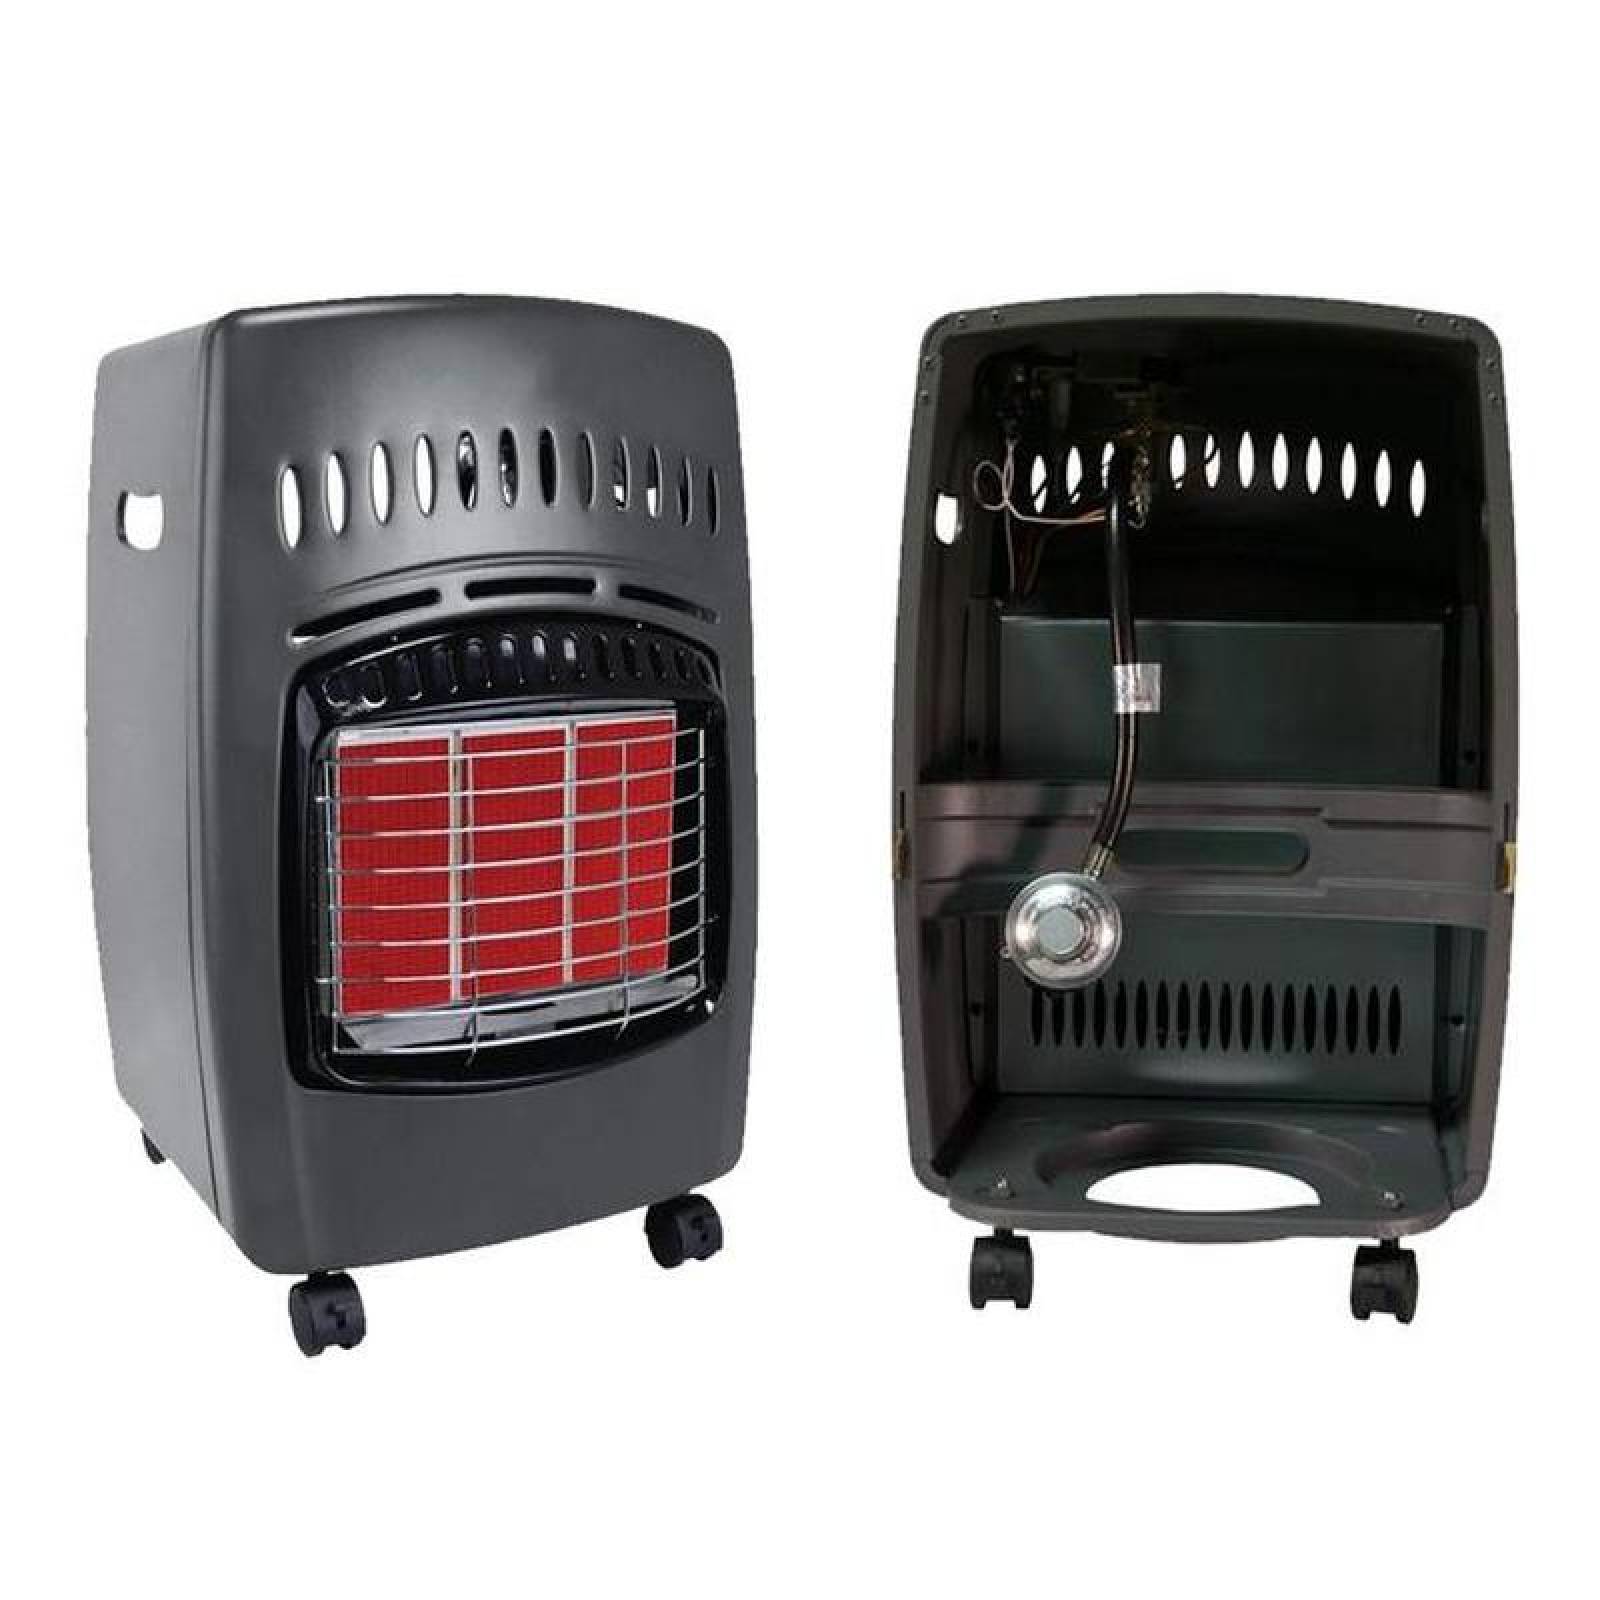 Venta de Calefactores de Calidad MXWRM-001-13 18000BTUs sin Tanque Gas LP Control Manual Infrarrojo 60m2 Negro, Warmy